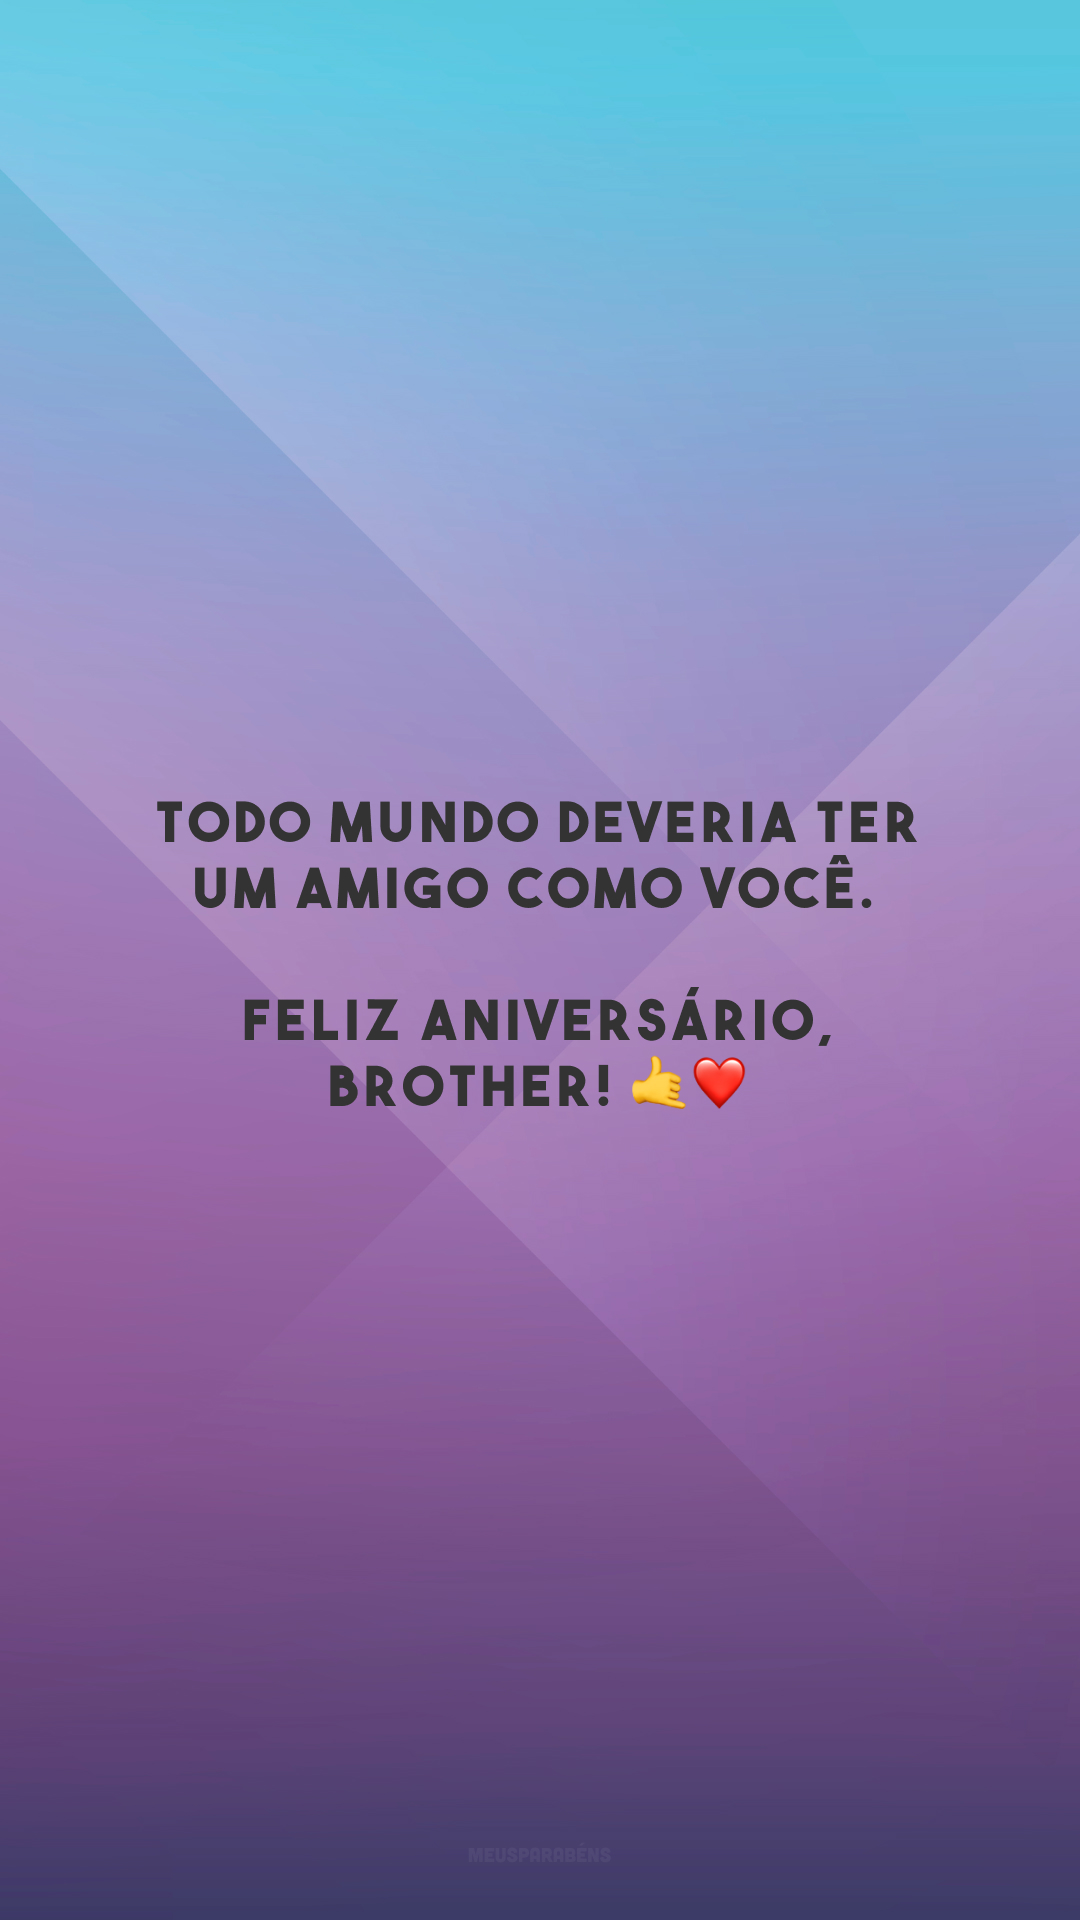 Todo mundo deveria ter um amigo como você. Feliz aniversário, brother! 🤙❤️